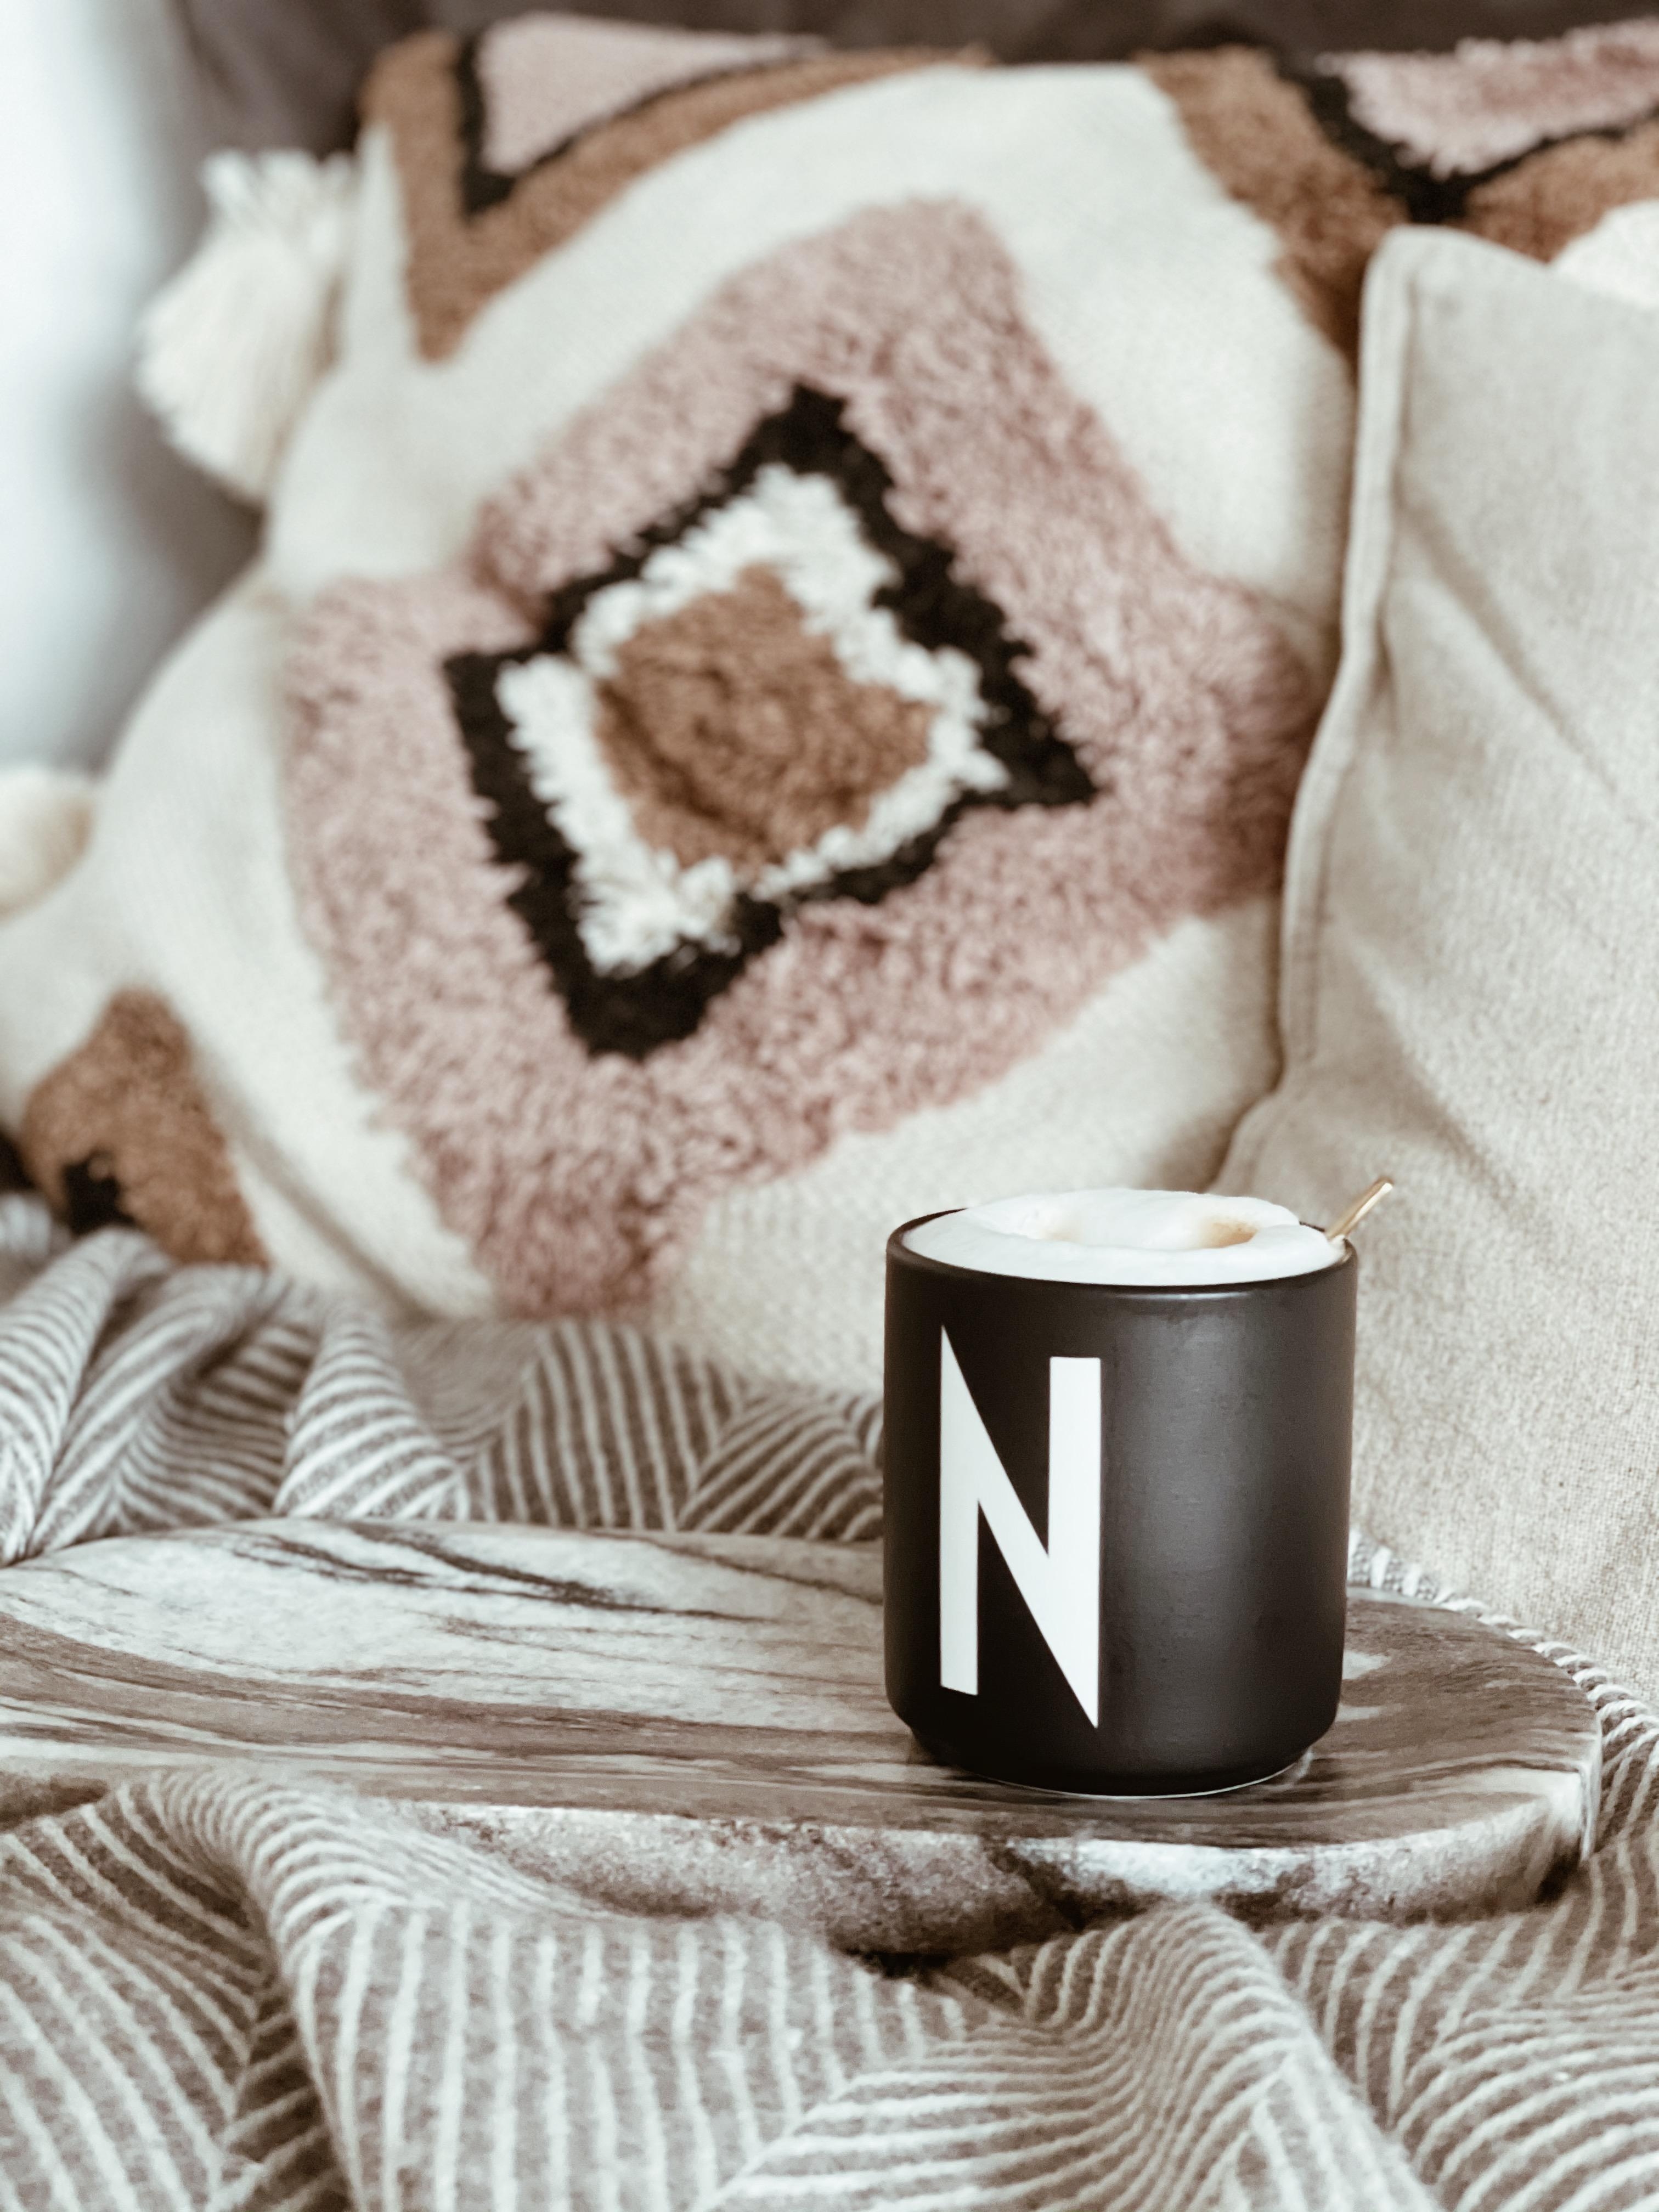 Es geht nichts über Kaffee und Gemütlichkeit ☕️
#zuhause #details #home #coffeelover #cozy #boho #scandi #couchstyle 